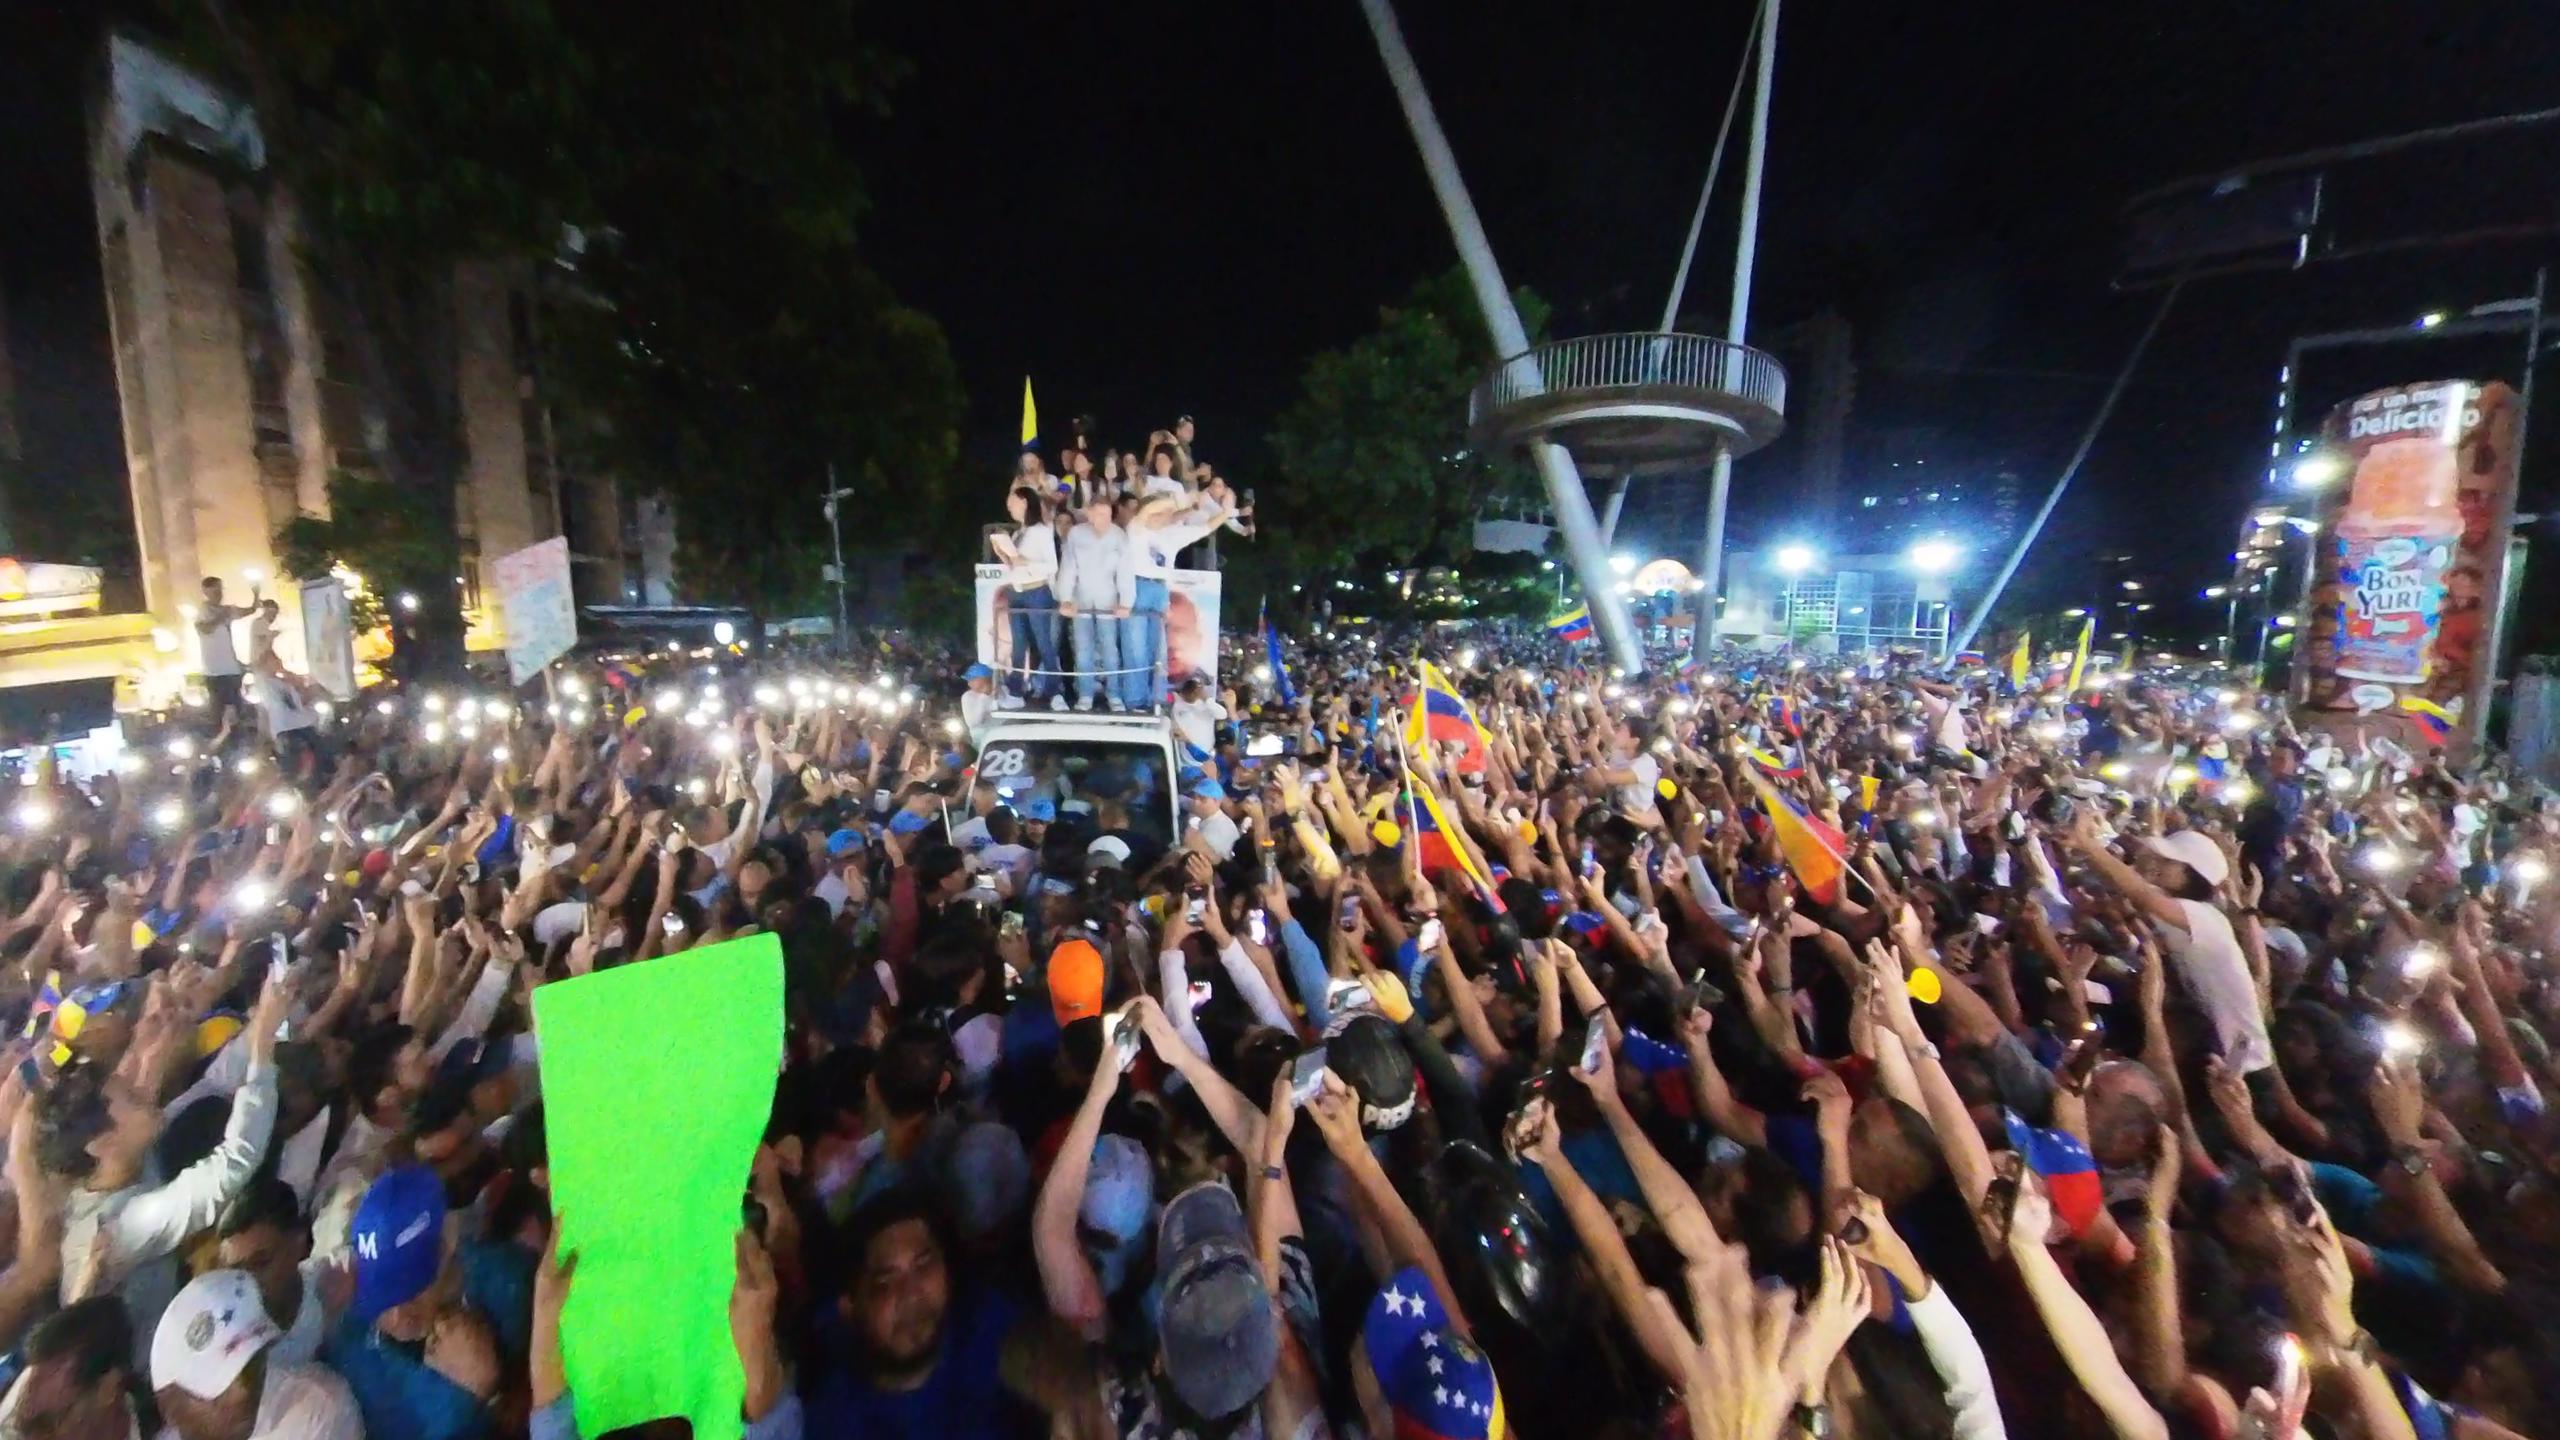 Las imágenes del masivo cierre de campaña de Edmundo González y María Corina Machado en Caracas (VIDEOS)